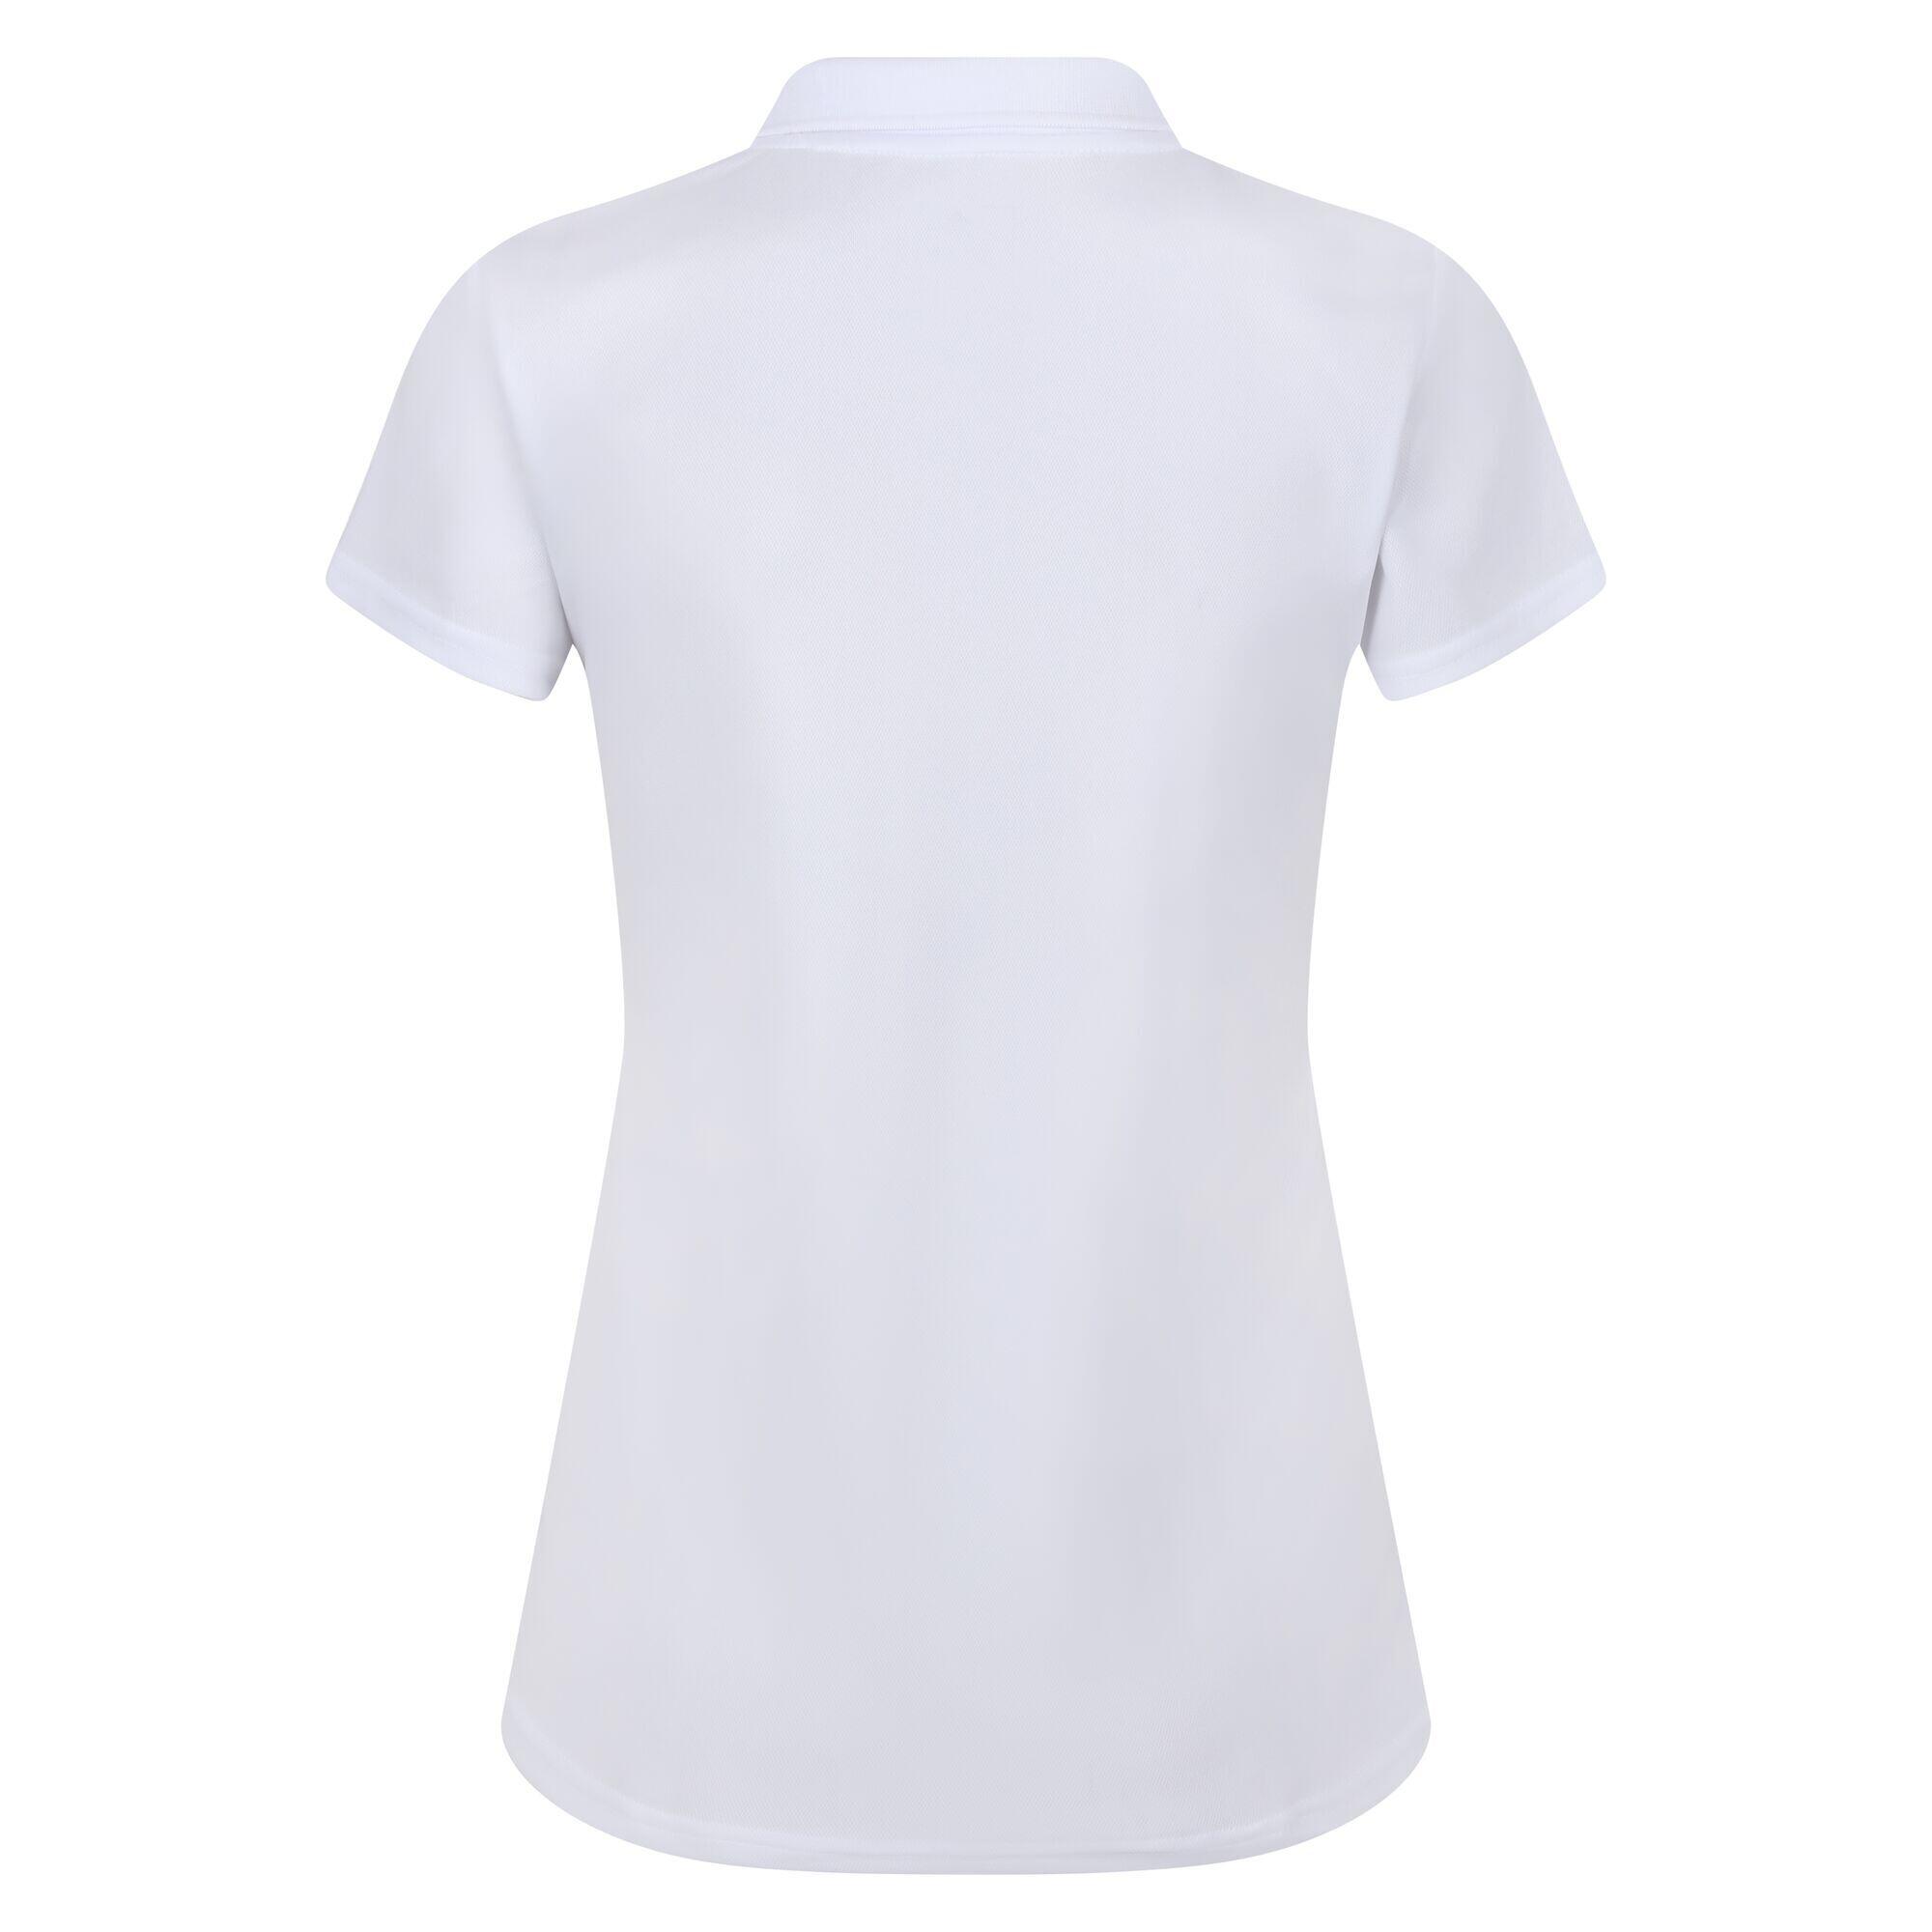 Maverik V Women's Walking Short Sleeve T-Shirt - White 6/6